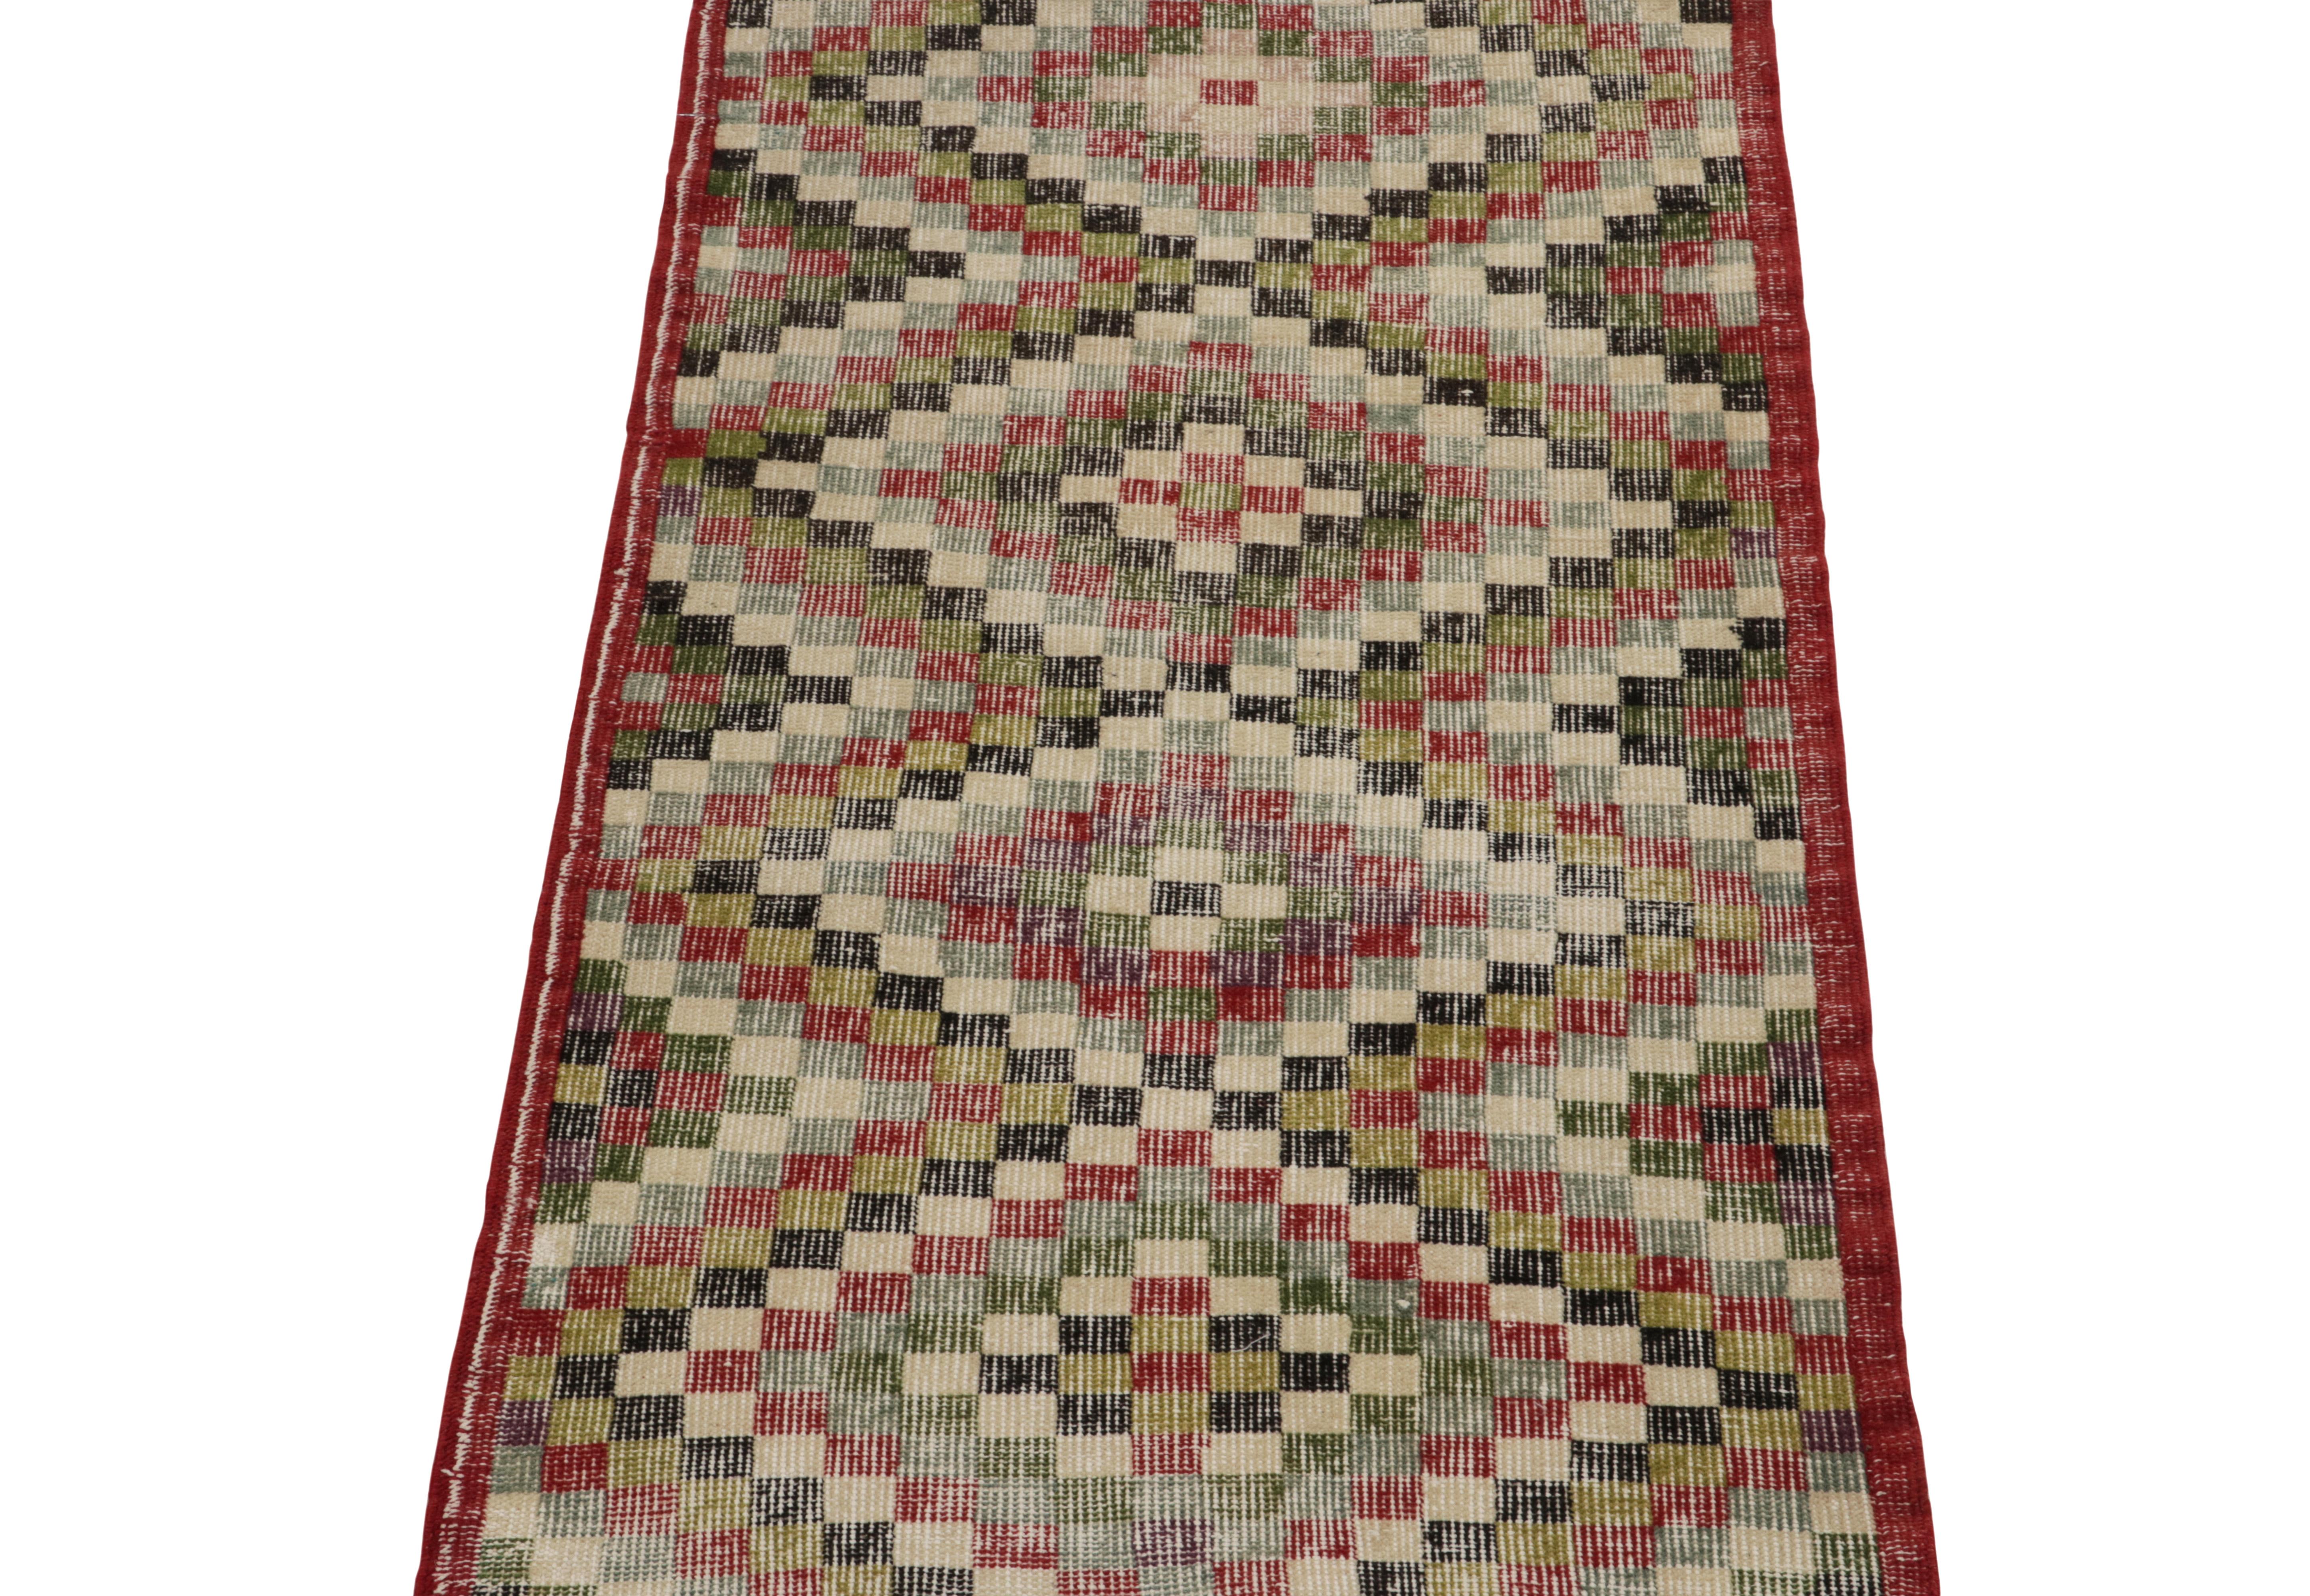 Ein 2 x 5 großer Vintage-Teppich, der sich in unsere Mid-Century-Pascha-Kollektion einreiht, die an die Werke der kühnen Ateliers der 1960er Jahre erinnert. 

Das shabby-chic Design erfreut sich eines anmutigen mehrfarbigen geometrischen Musters